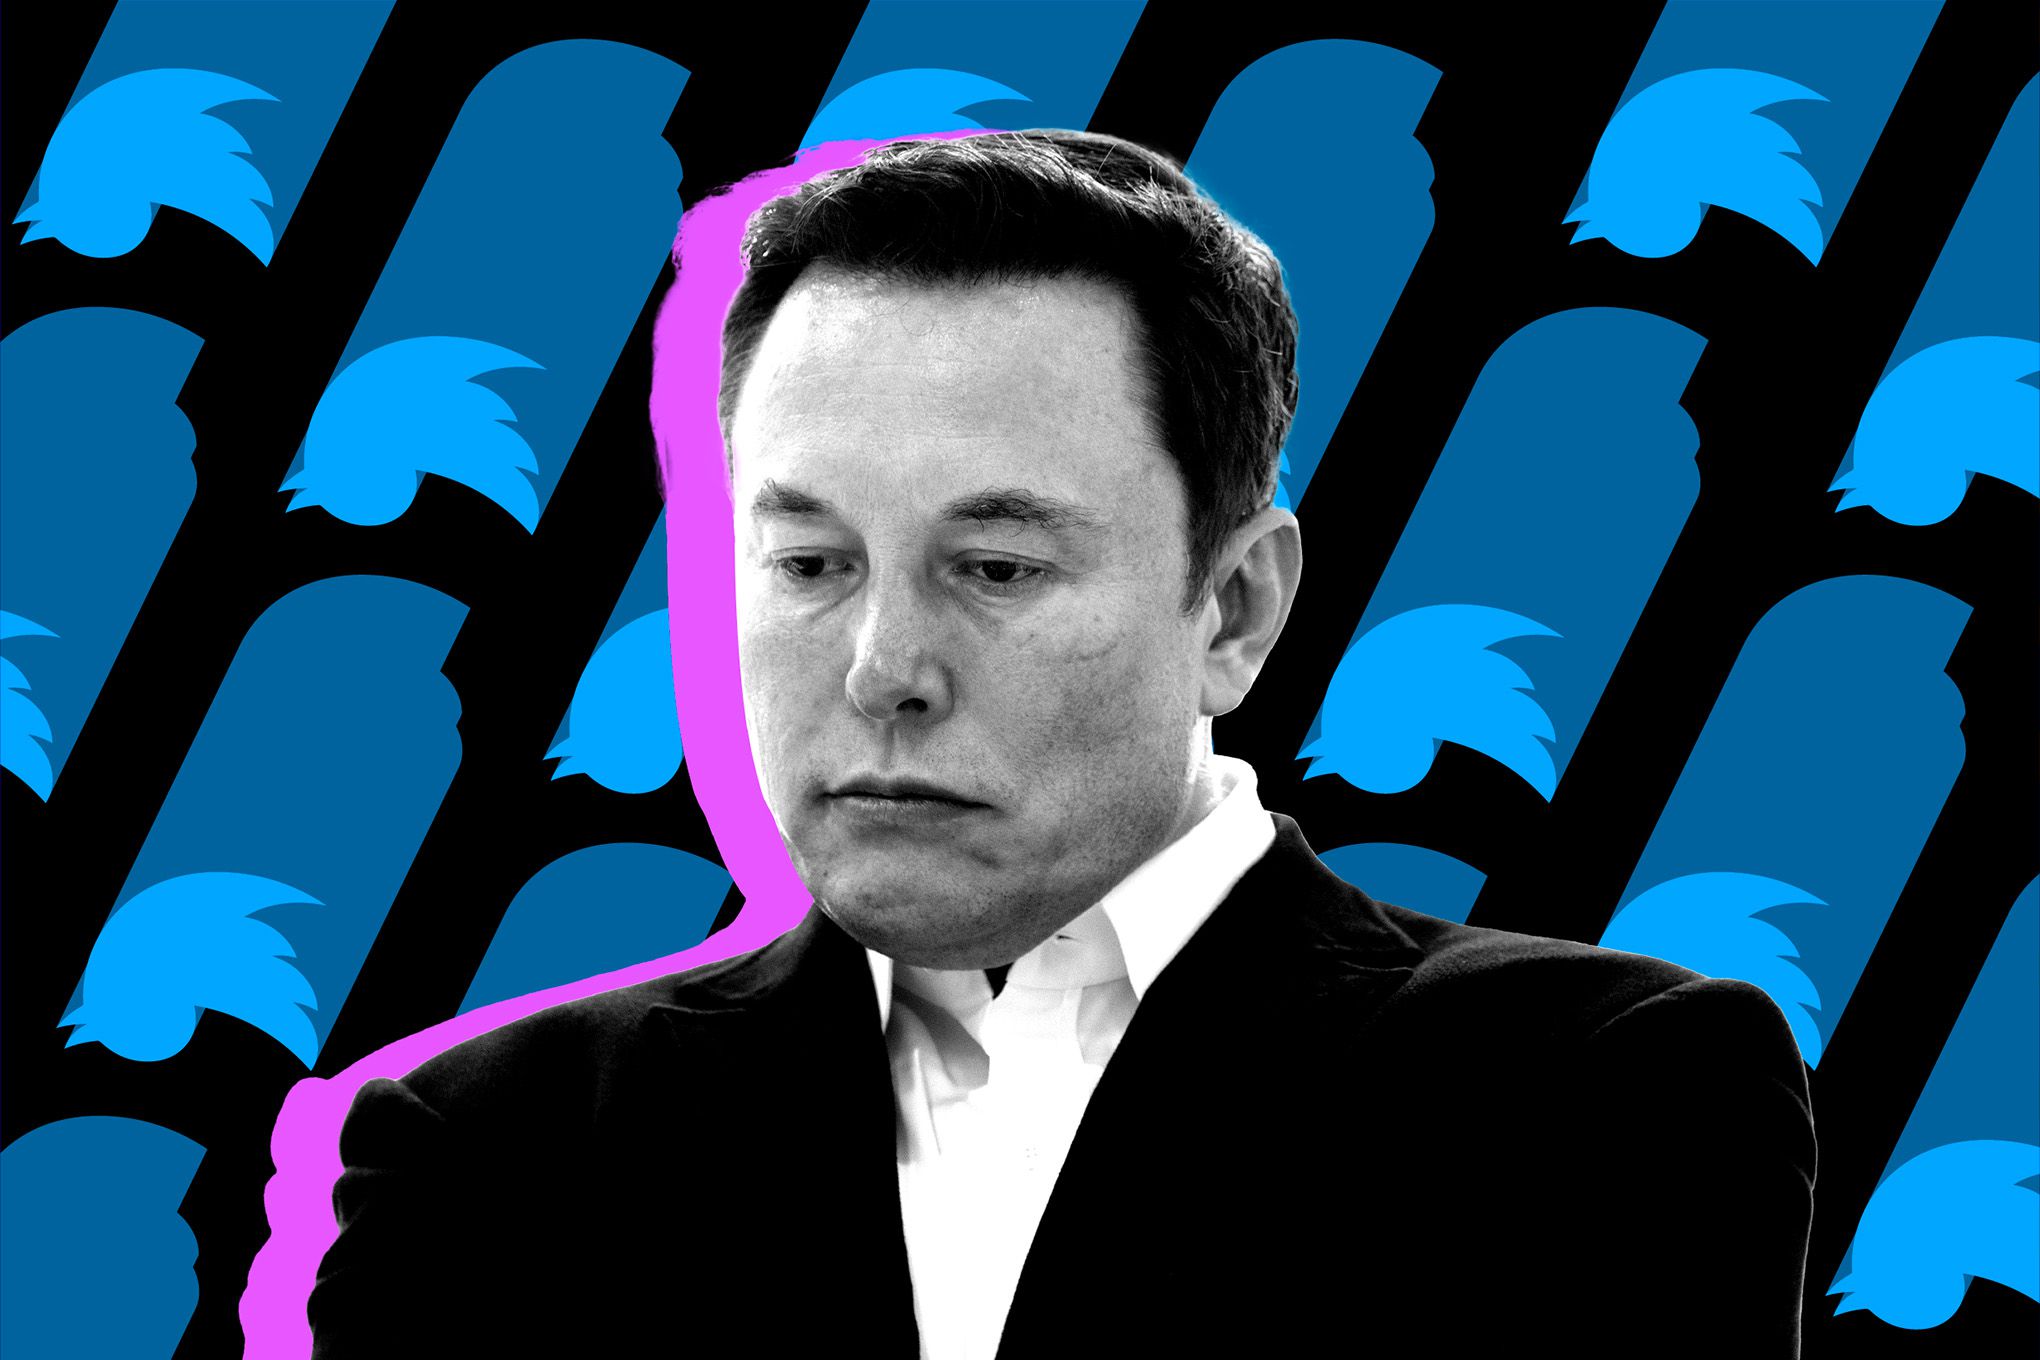 Njerëzit vendosin, Elon Musk pritet të largohet nga drejtimi i Twitter